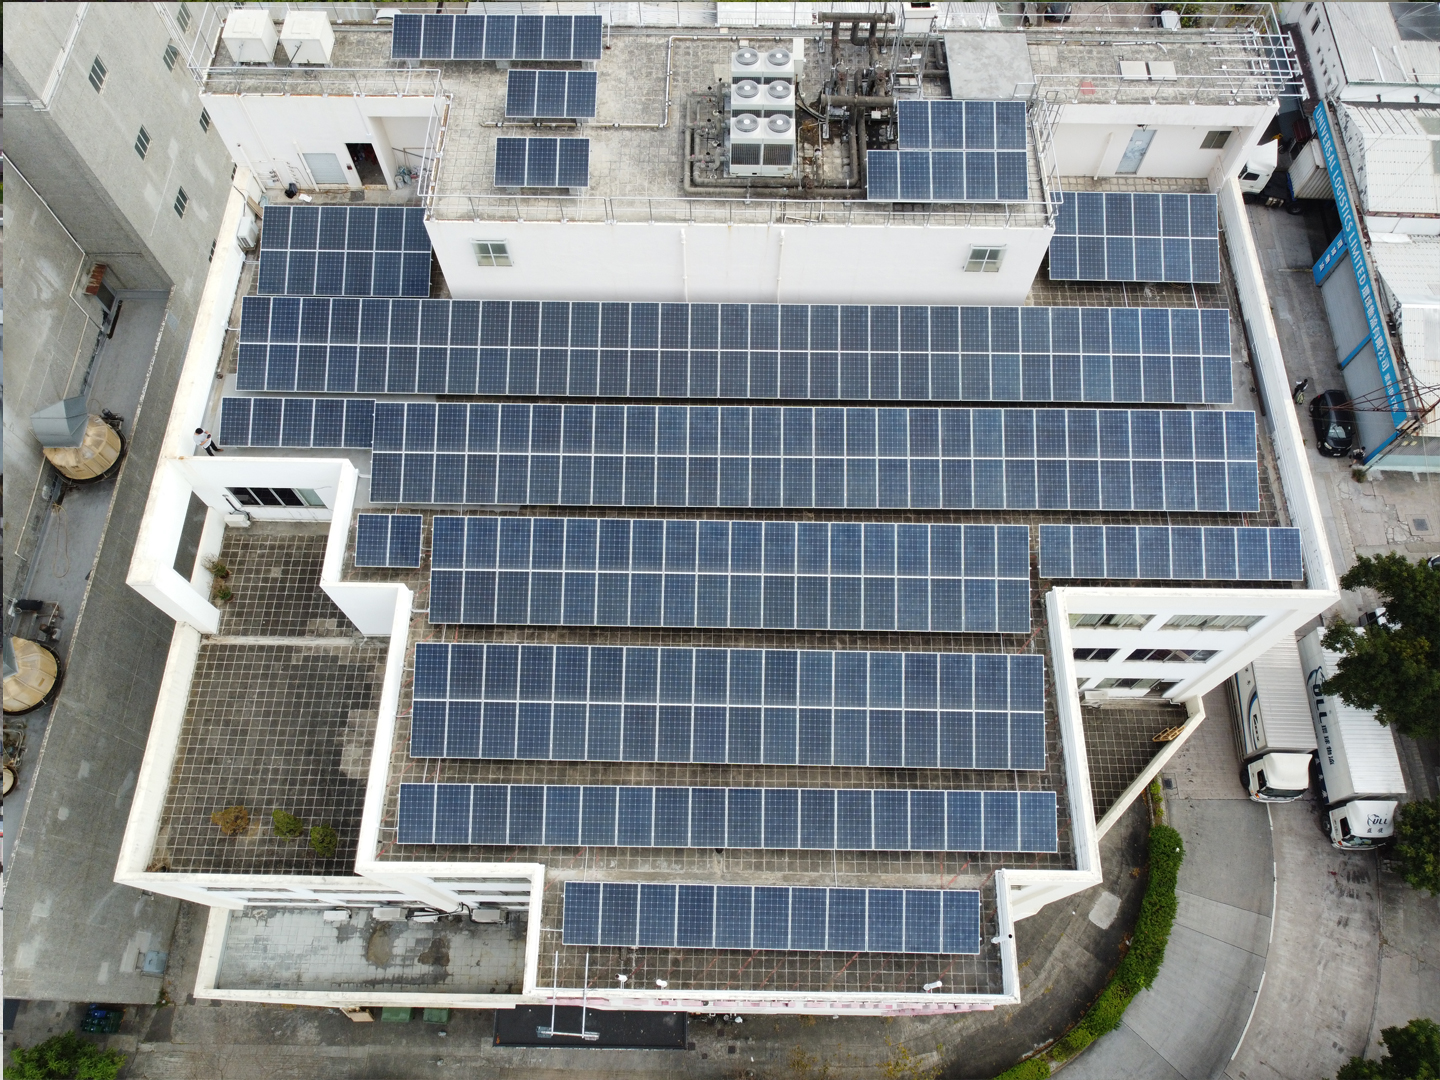 工业建筑屋顶上的 100 kW 太阳能系统